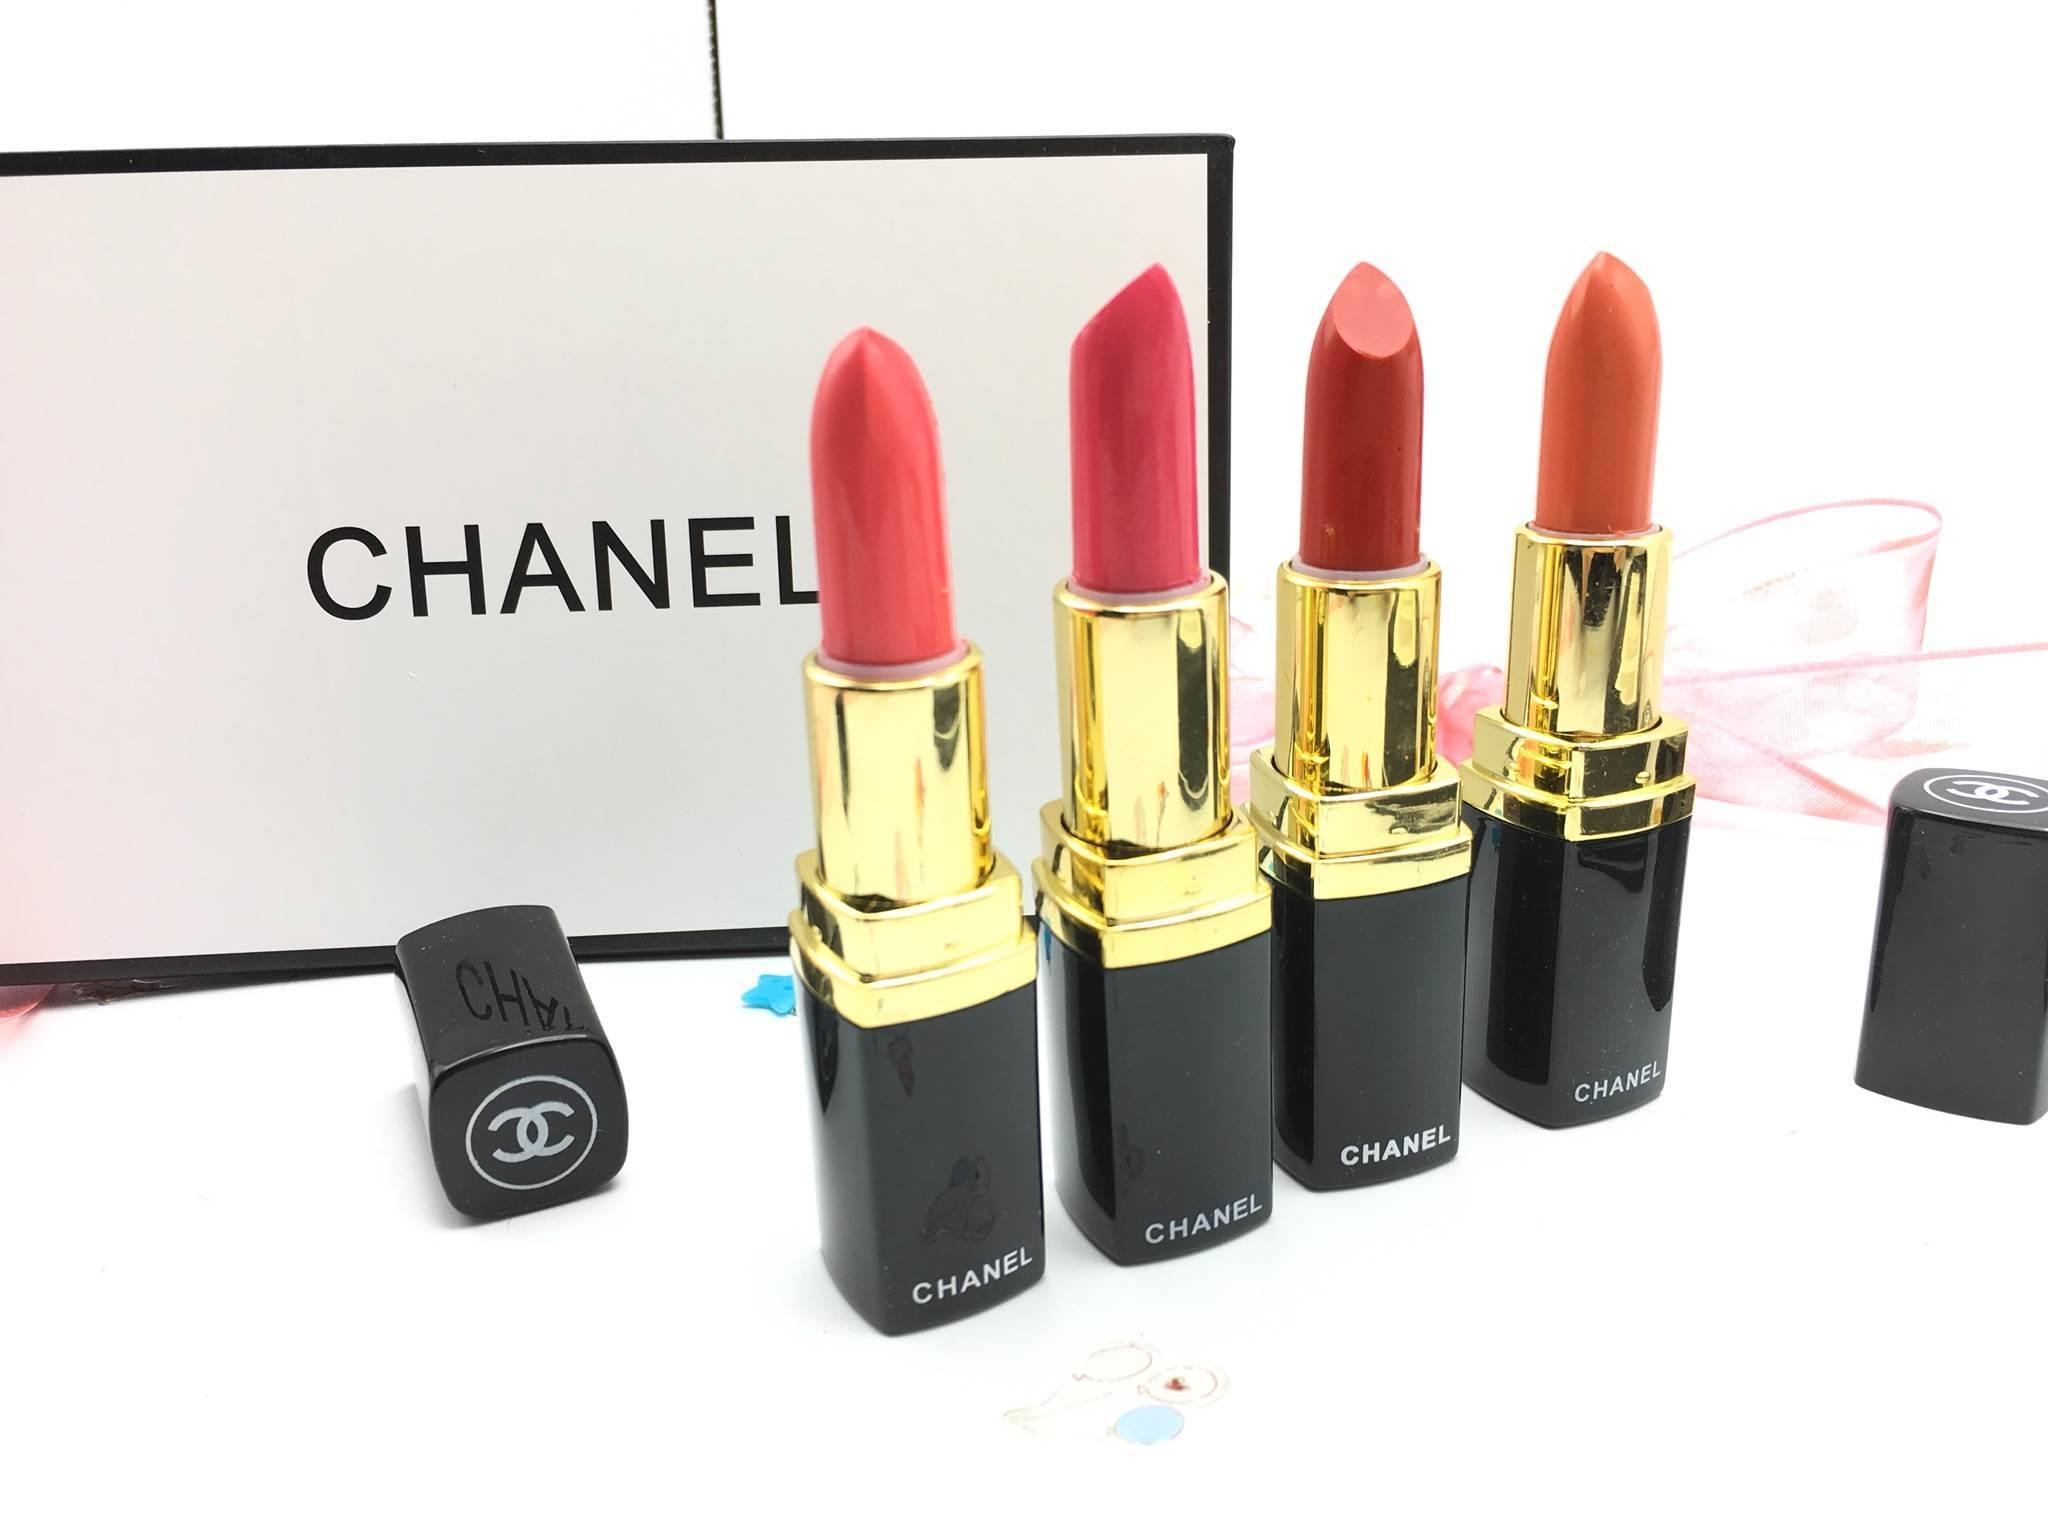 à¸à¸¥à¸à¸²à¸£à¸à¹à¸à¸«à¸²à¸£à¸¹à¸à¸ à¸²à¸à¸ªà¸³à¸«à¸£à¸±à¸ Chanel Matte Lipstick Set à¹à¸à¸à¸¥à¸´à¸à¸ªà¸à¸´à¸à¸à¸²à¹à¸à¸¥ (à¹à¸à¹à¸ 4 à¹à¸à¹à¸) - 1 à¹à¸à¹à¸